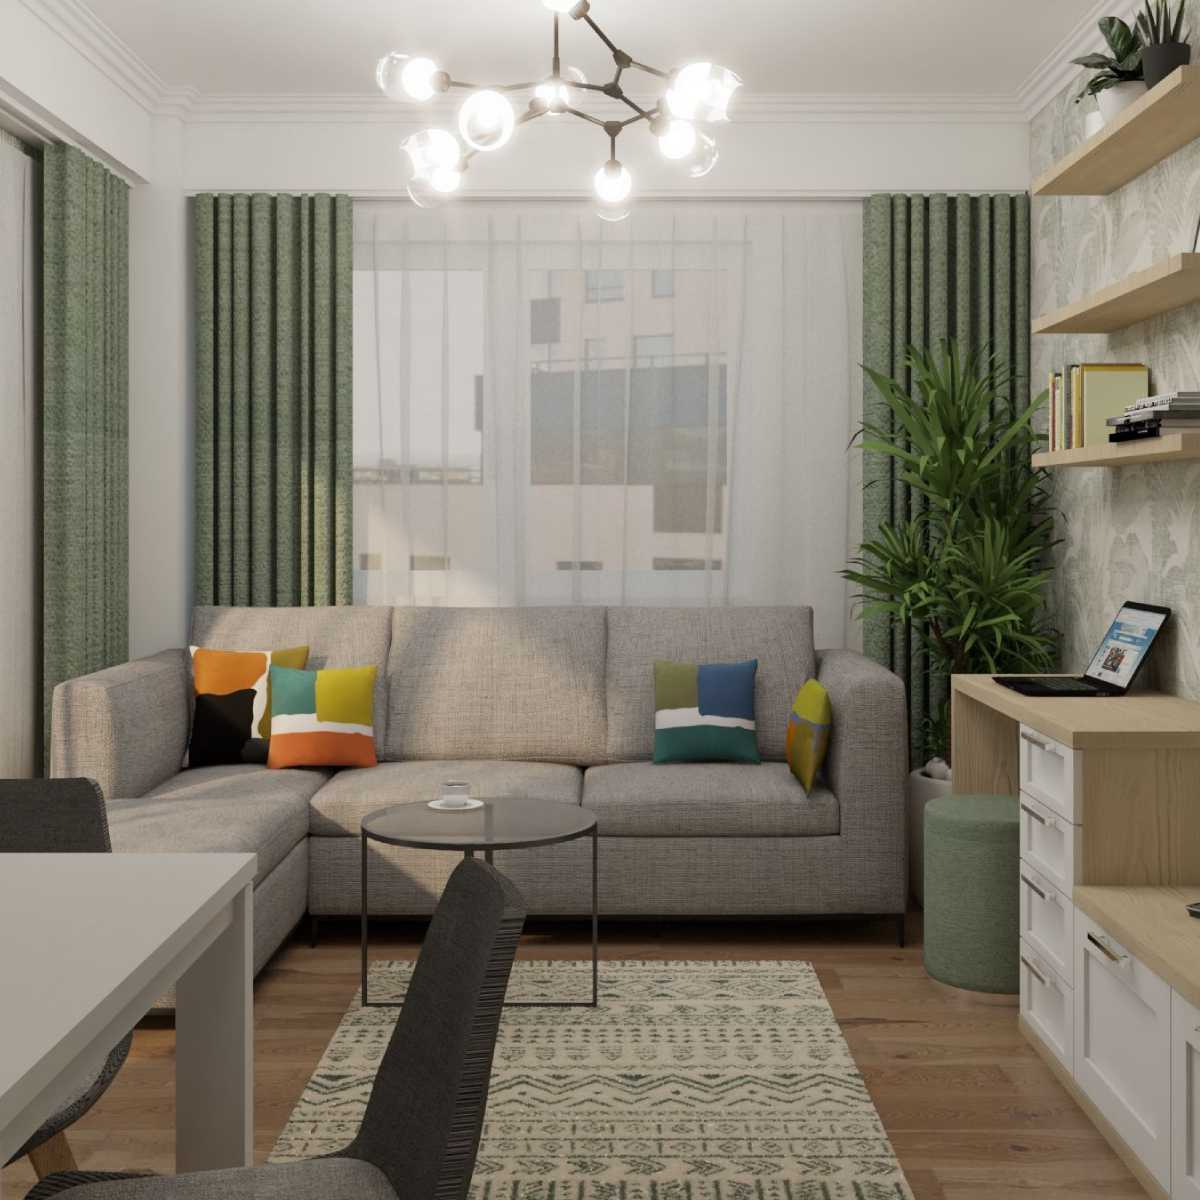 Design interior living